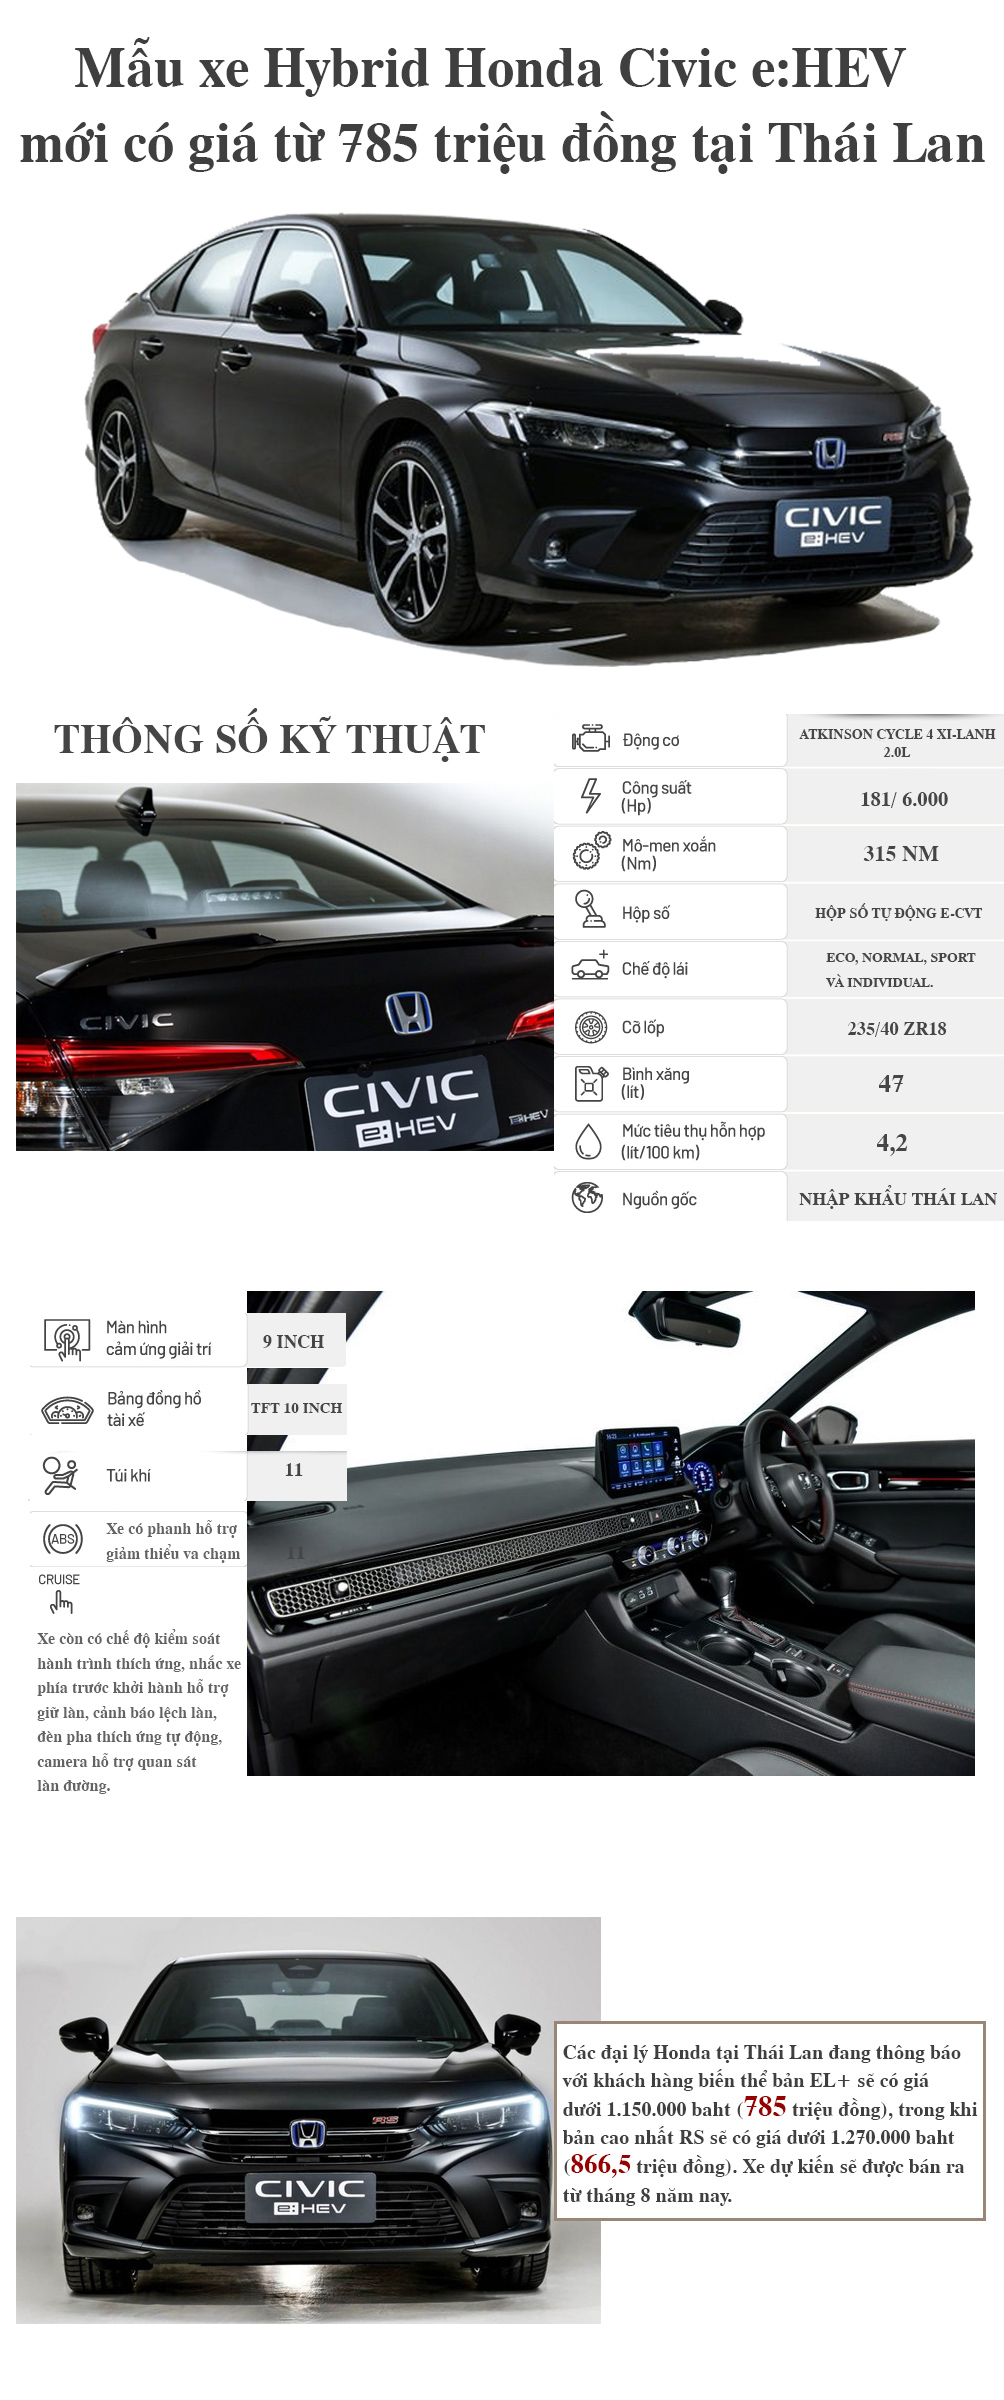 Soi mẫu xe Hybrid Honda Civic e:HEV mới, giá từ 785 triệu đồng - 1